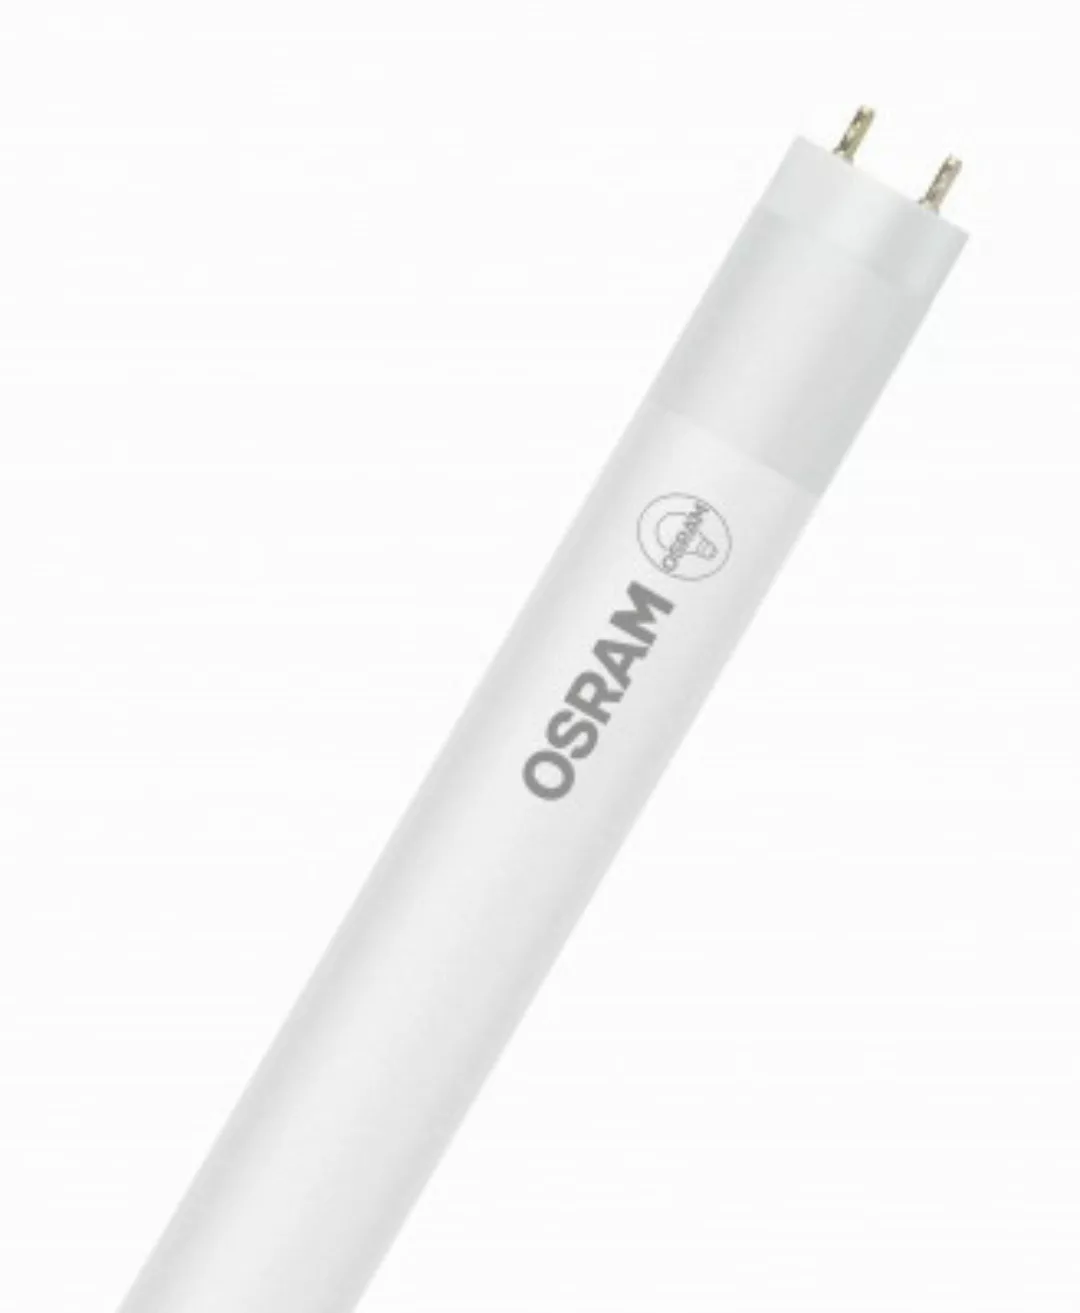 OSRAM LED RÖHRE SUBSTITUBE T8 STAR+ ST8SP-1.5M-840 EM BOX K Kaltweiß Matt G günstig online kaufen